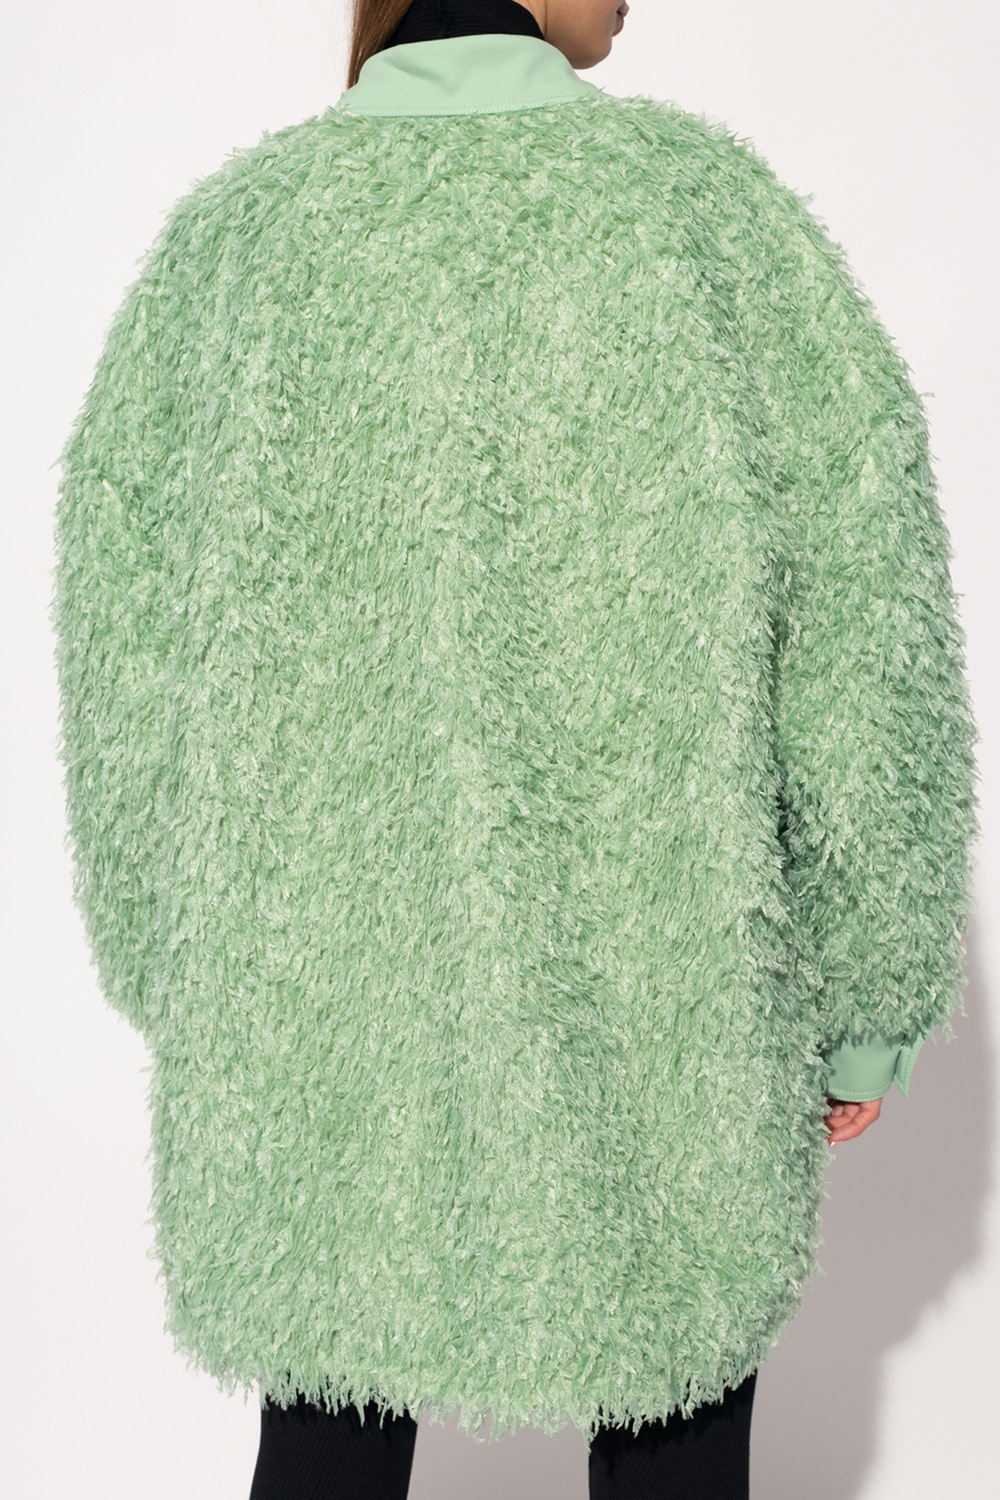 The Attico max mara caimano intarsia cashmere sweater